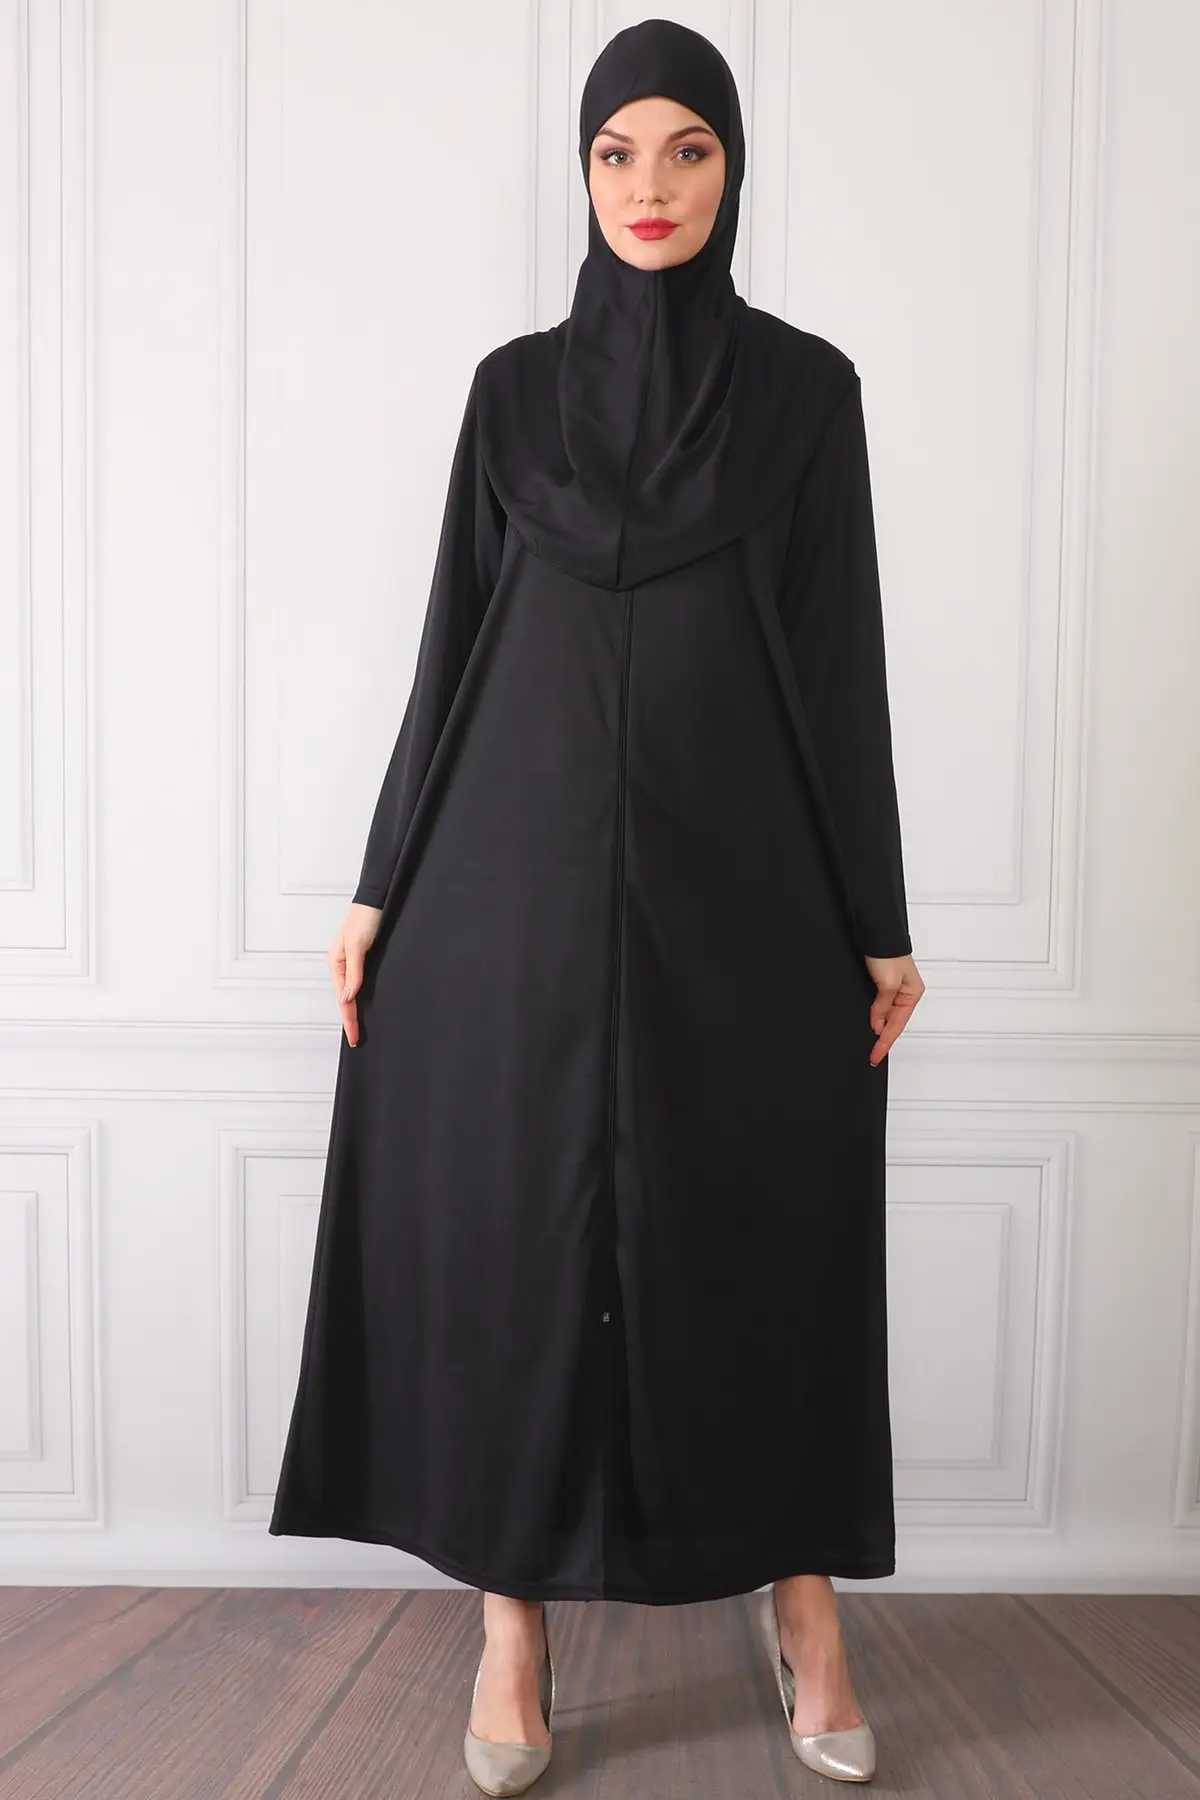 

Застежка-молния на один-кусок практичный одет молитва платье черного и синего цветов r молитва исламское платье Абая традиционные